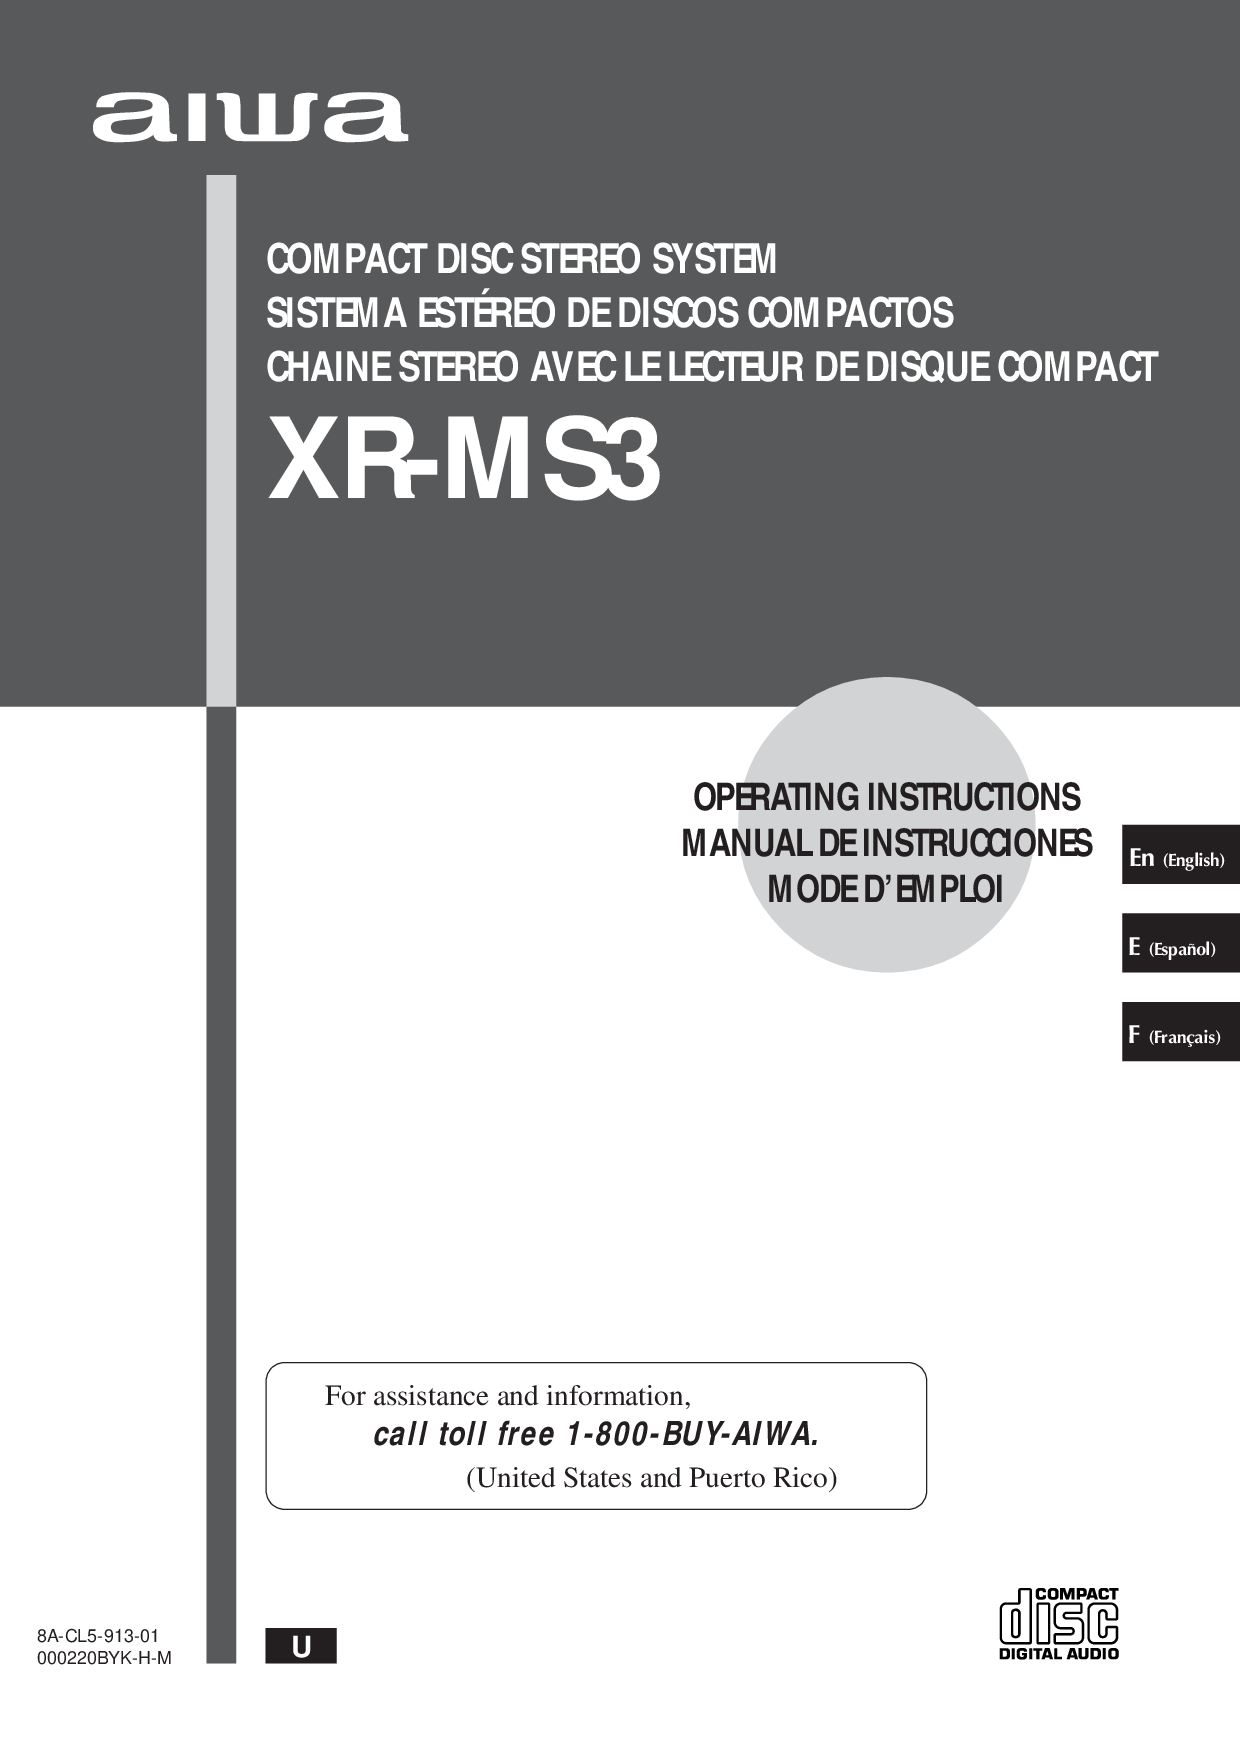 Aiwa xr-ms3 user manual.